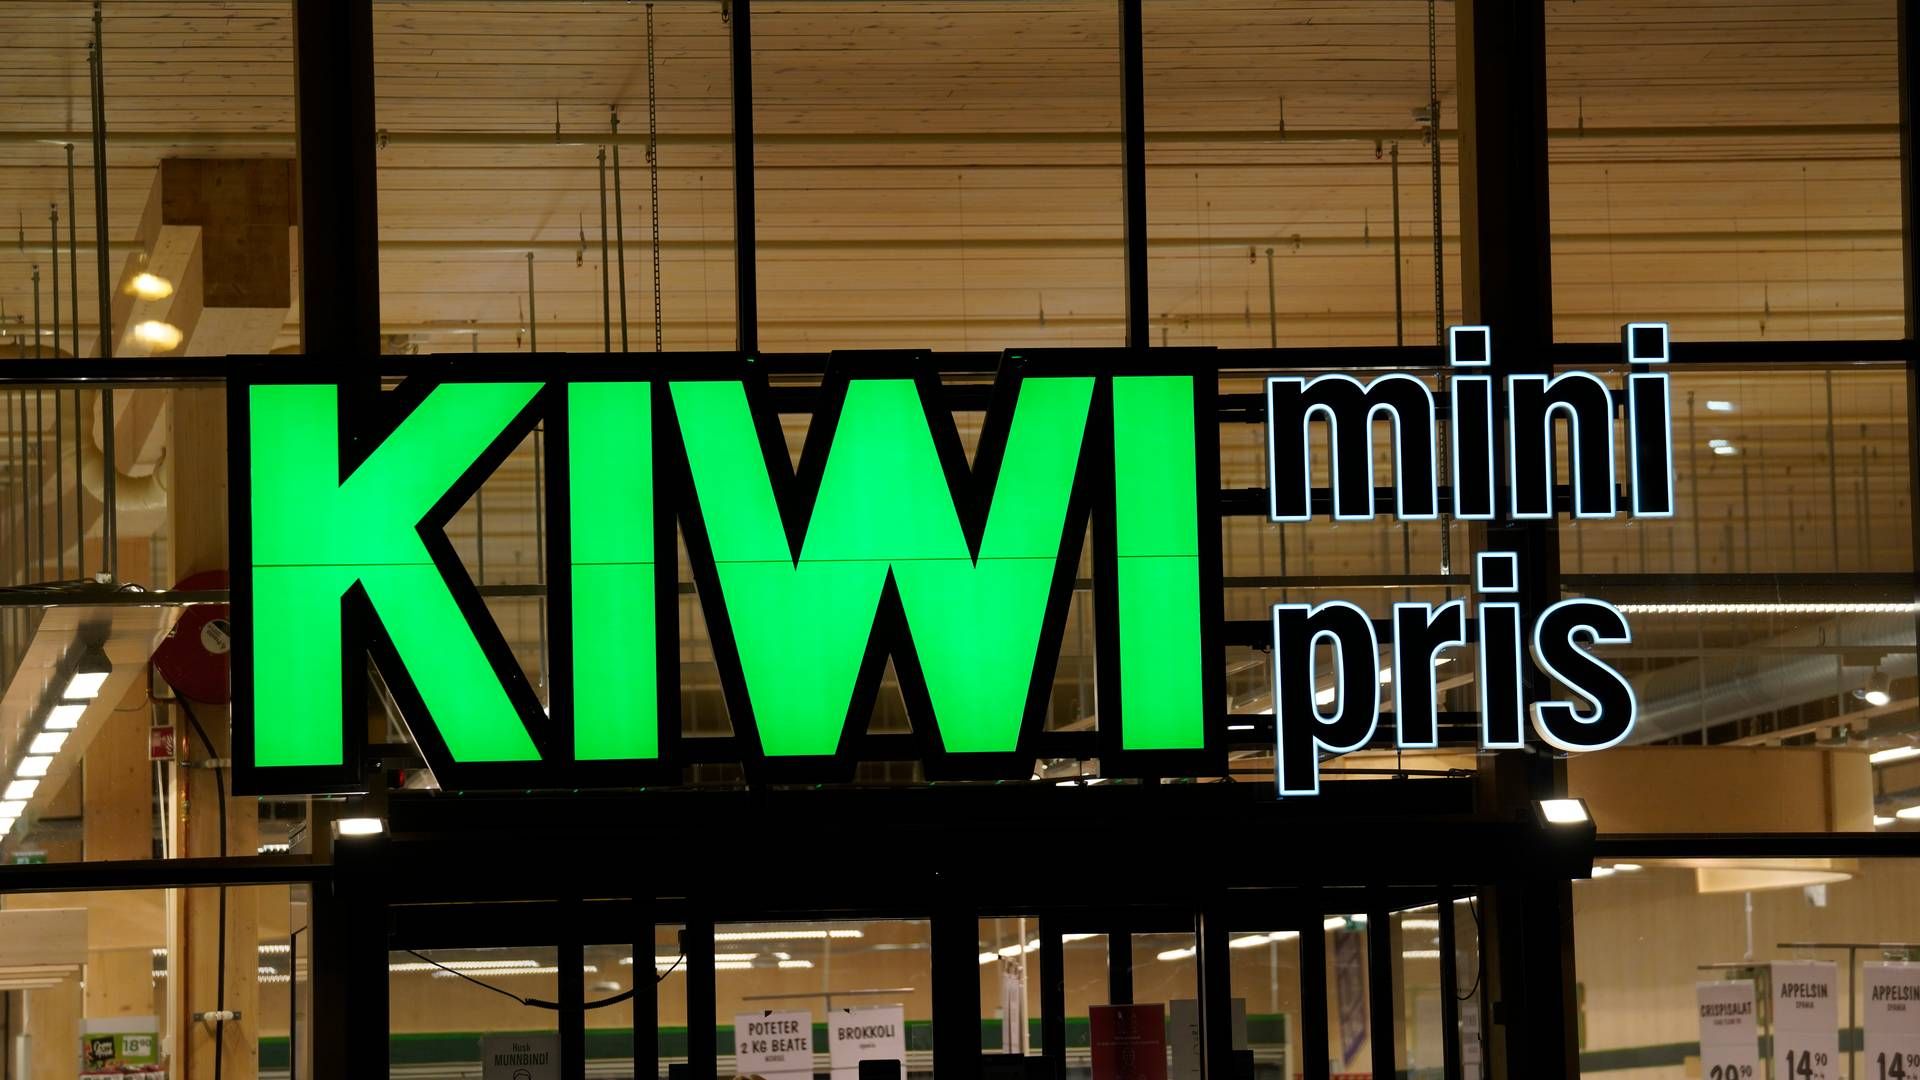 PRØVER Å UNNGÅ: Kiwi prøver å unngå å sette begrensninger for kundene sine, forteller kommunikasjonsdirektør Kristine Aakvaag Arvin. | Foto: Terje Bendiksby/NTB